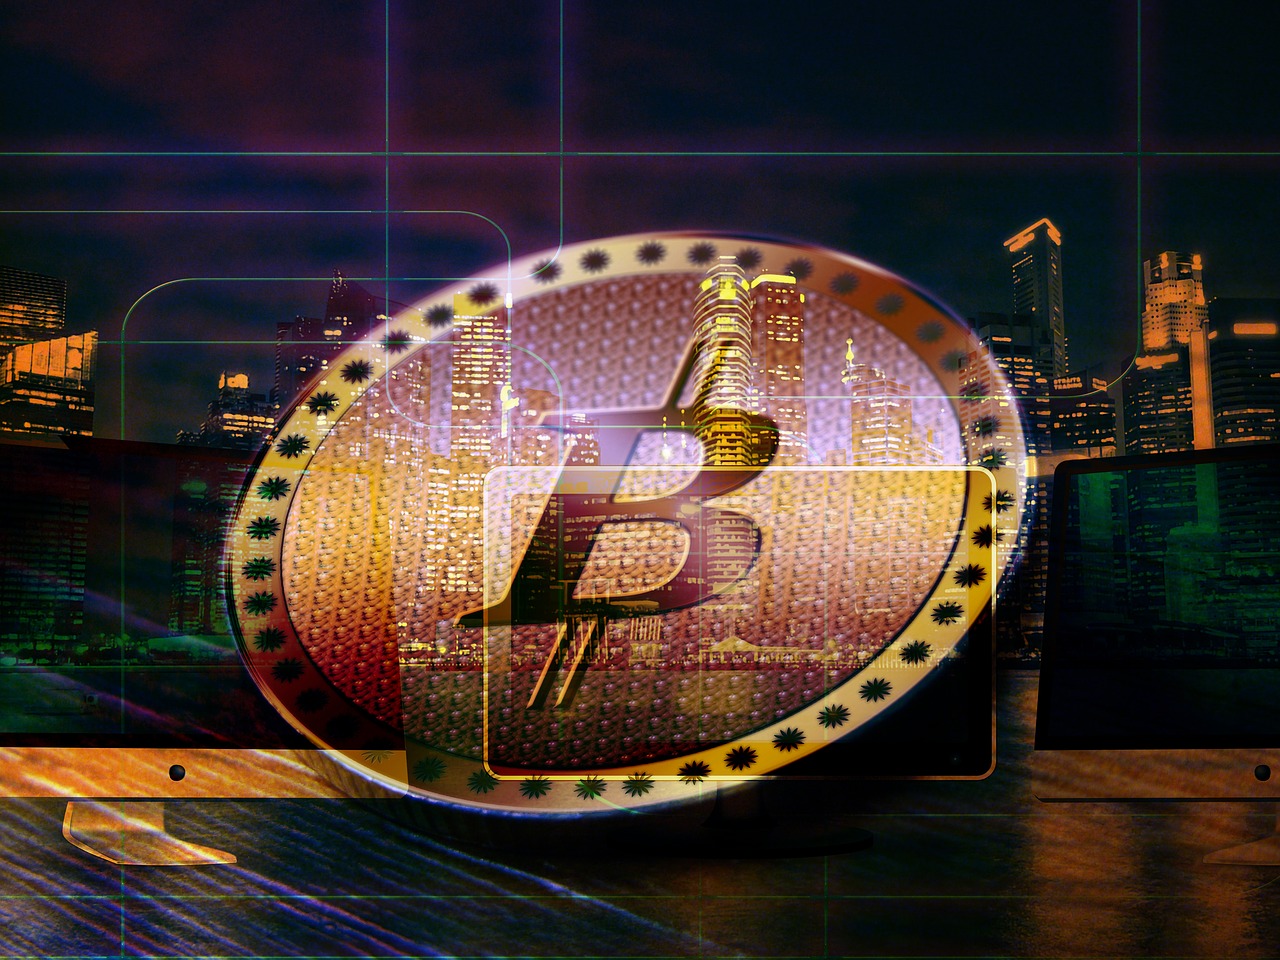 bitcoin coin money free photo